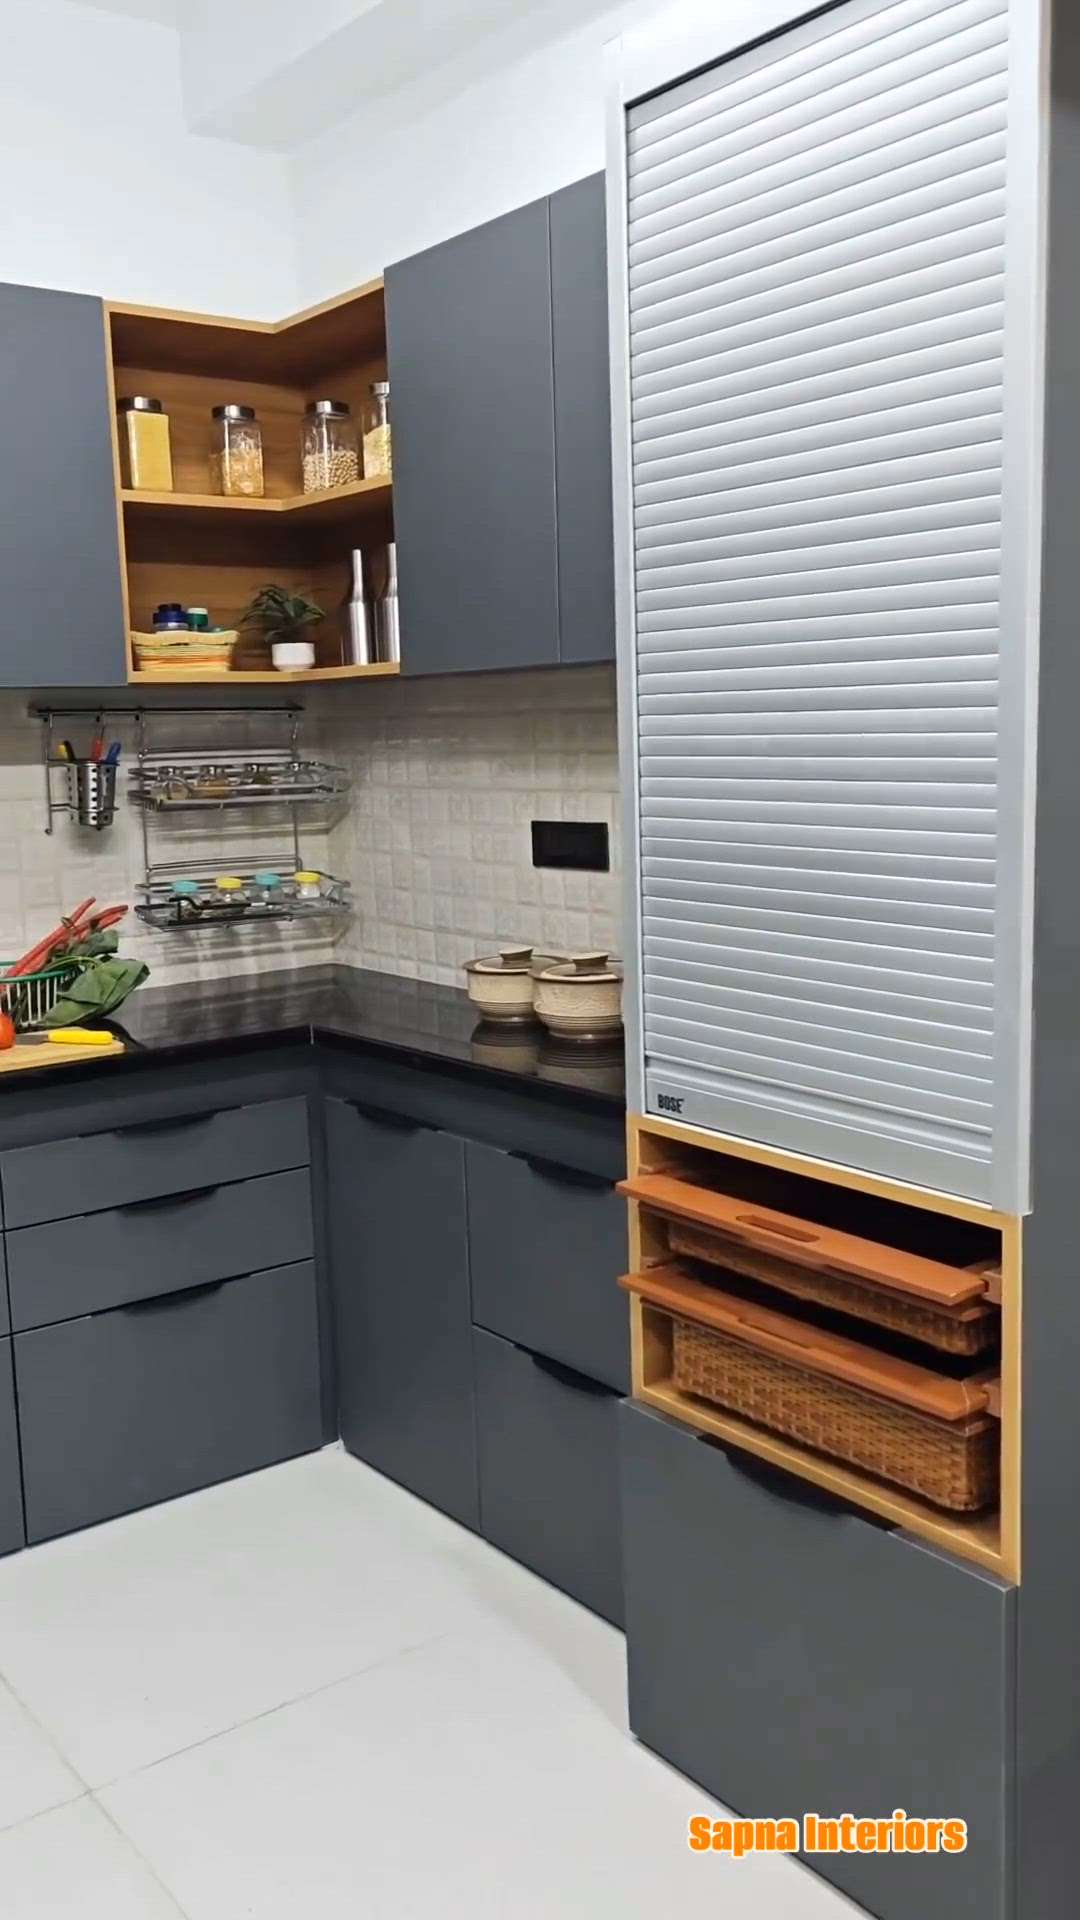 Create your dream kitchen now with us!

Want Modular kitchen? 
99
299
15722

#ModularKitchen #modularwardrobe #ModernBedMaking #modernhome #Architectural&Interior #archeon #WardrobeIdeas #SlidingDoorWardrobe #3DoorWardrobe #WalkInWardrobe #WalkInWardrobe #LivingRoomTable #LivingroomTexturePainting #LivingroomTexturePainting #WalkInWardrobe #CustomizedWardrobe #WalkInWardrobe #CustomizedWardrobe